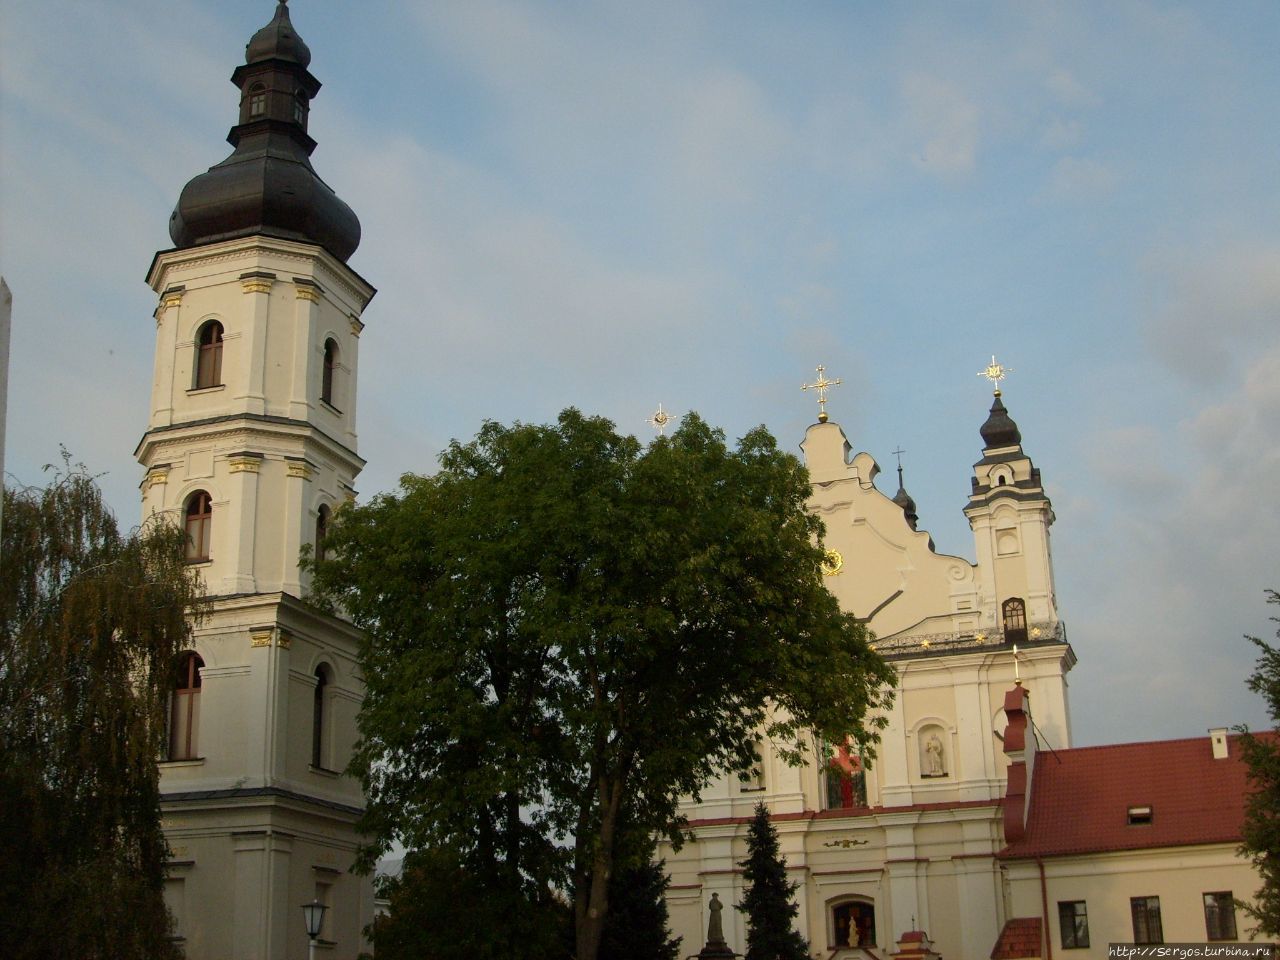 в 1396г. орденом францисканцев, на средства князя Кейстутовича, были заложены костёл и монастырь Беларусь